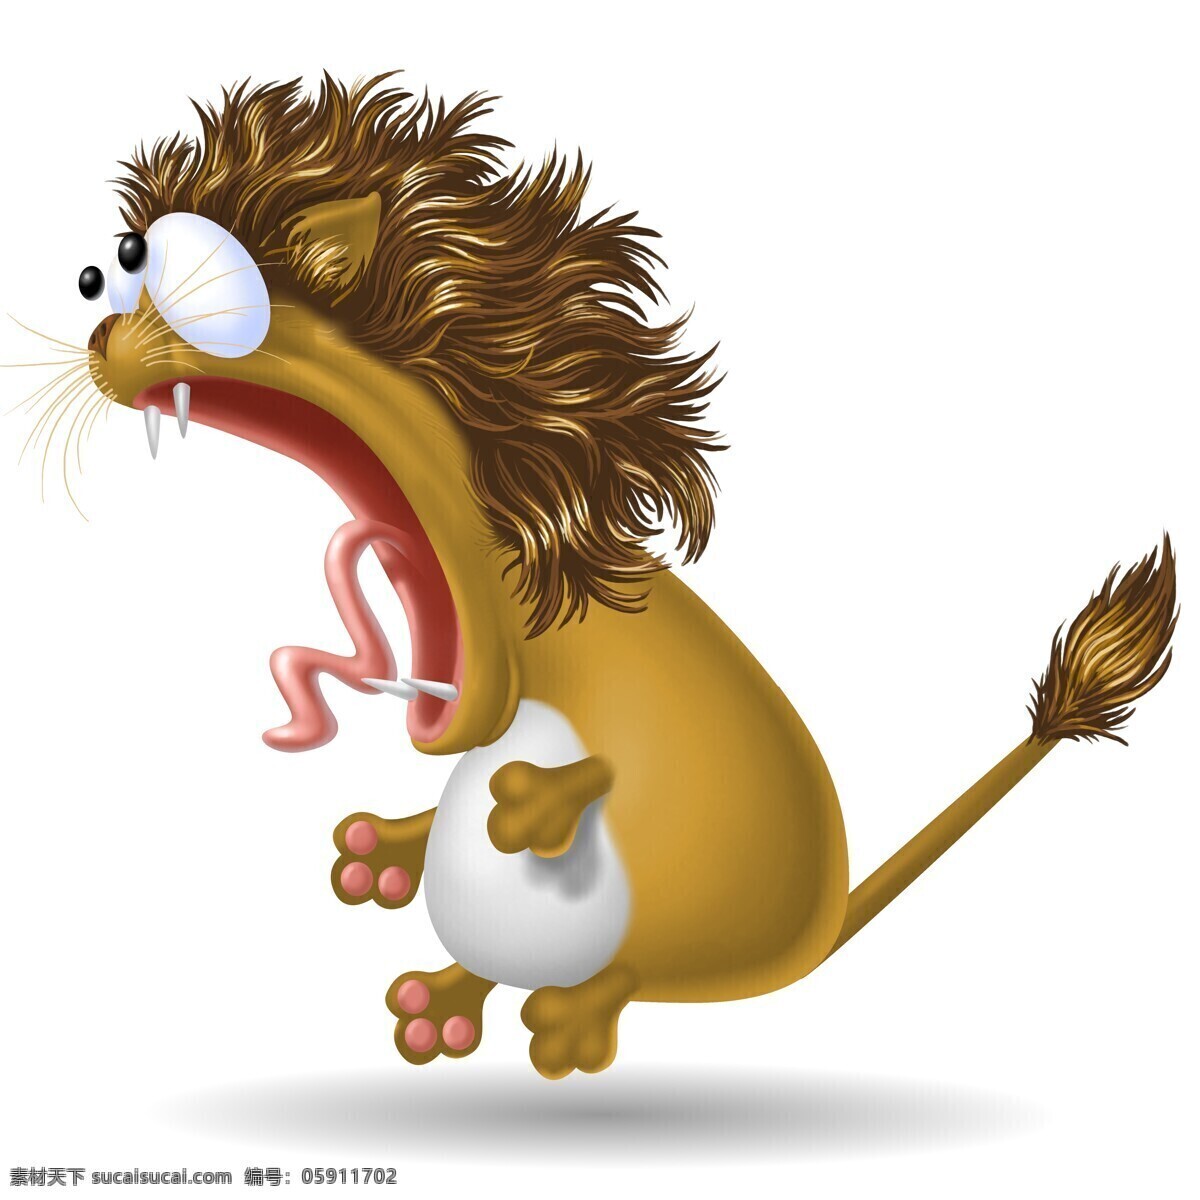 夸张 表情 3d 狮子 做 惊讶 动物 3d卡通动物 陆地动物 生物世界 卡通动物